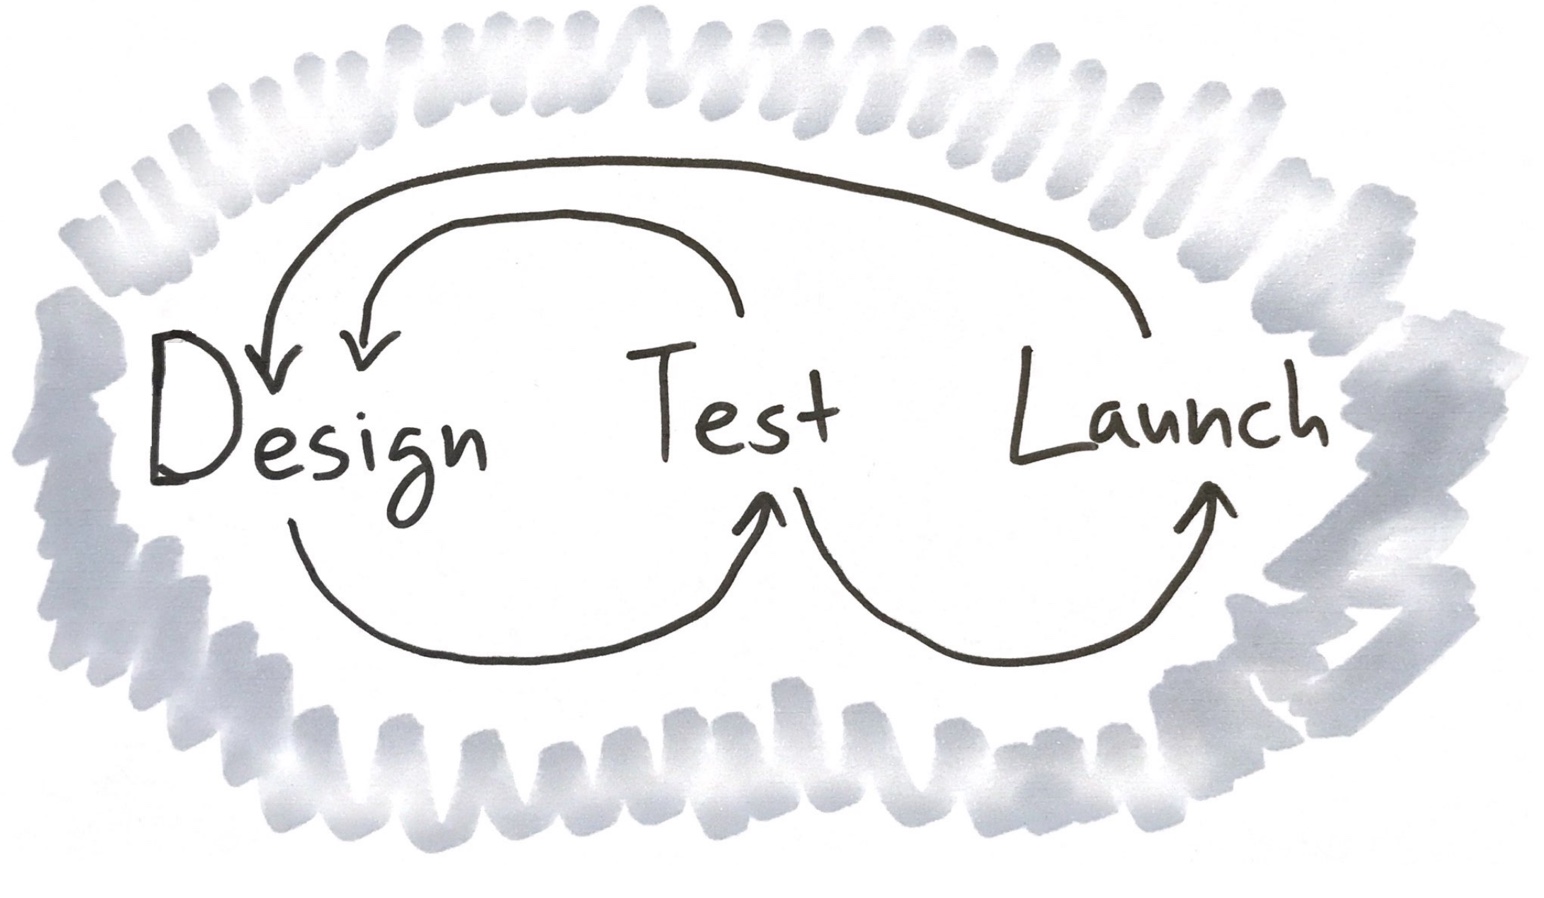 Design, then Test, then Launch